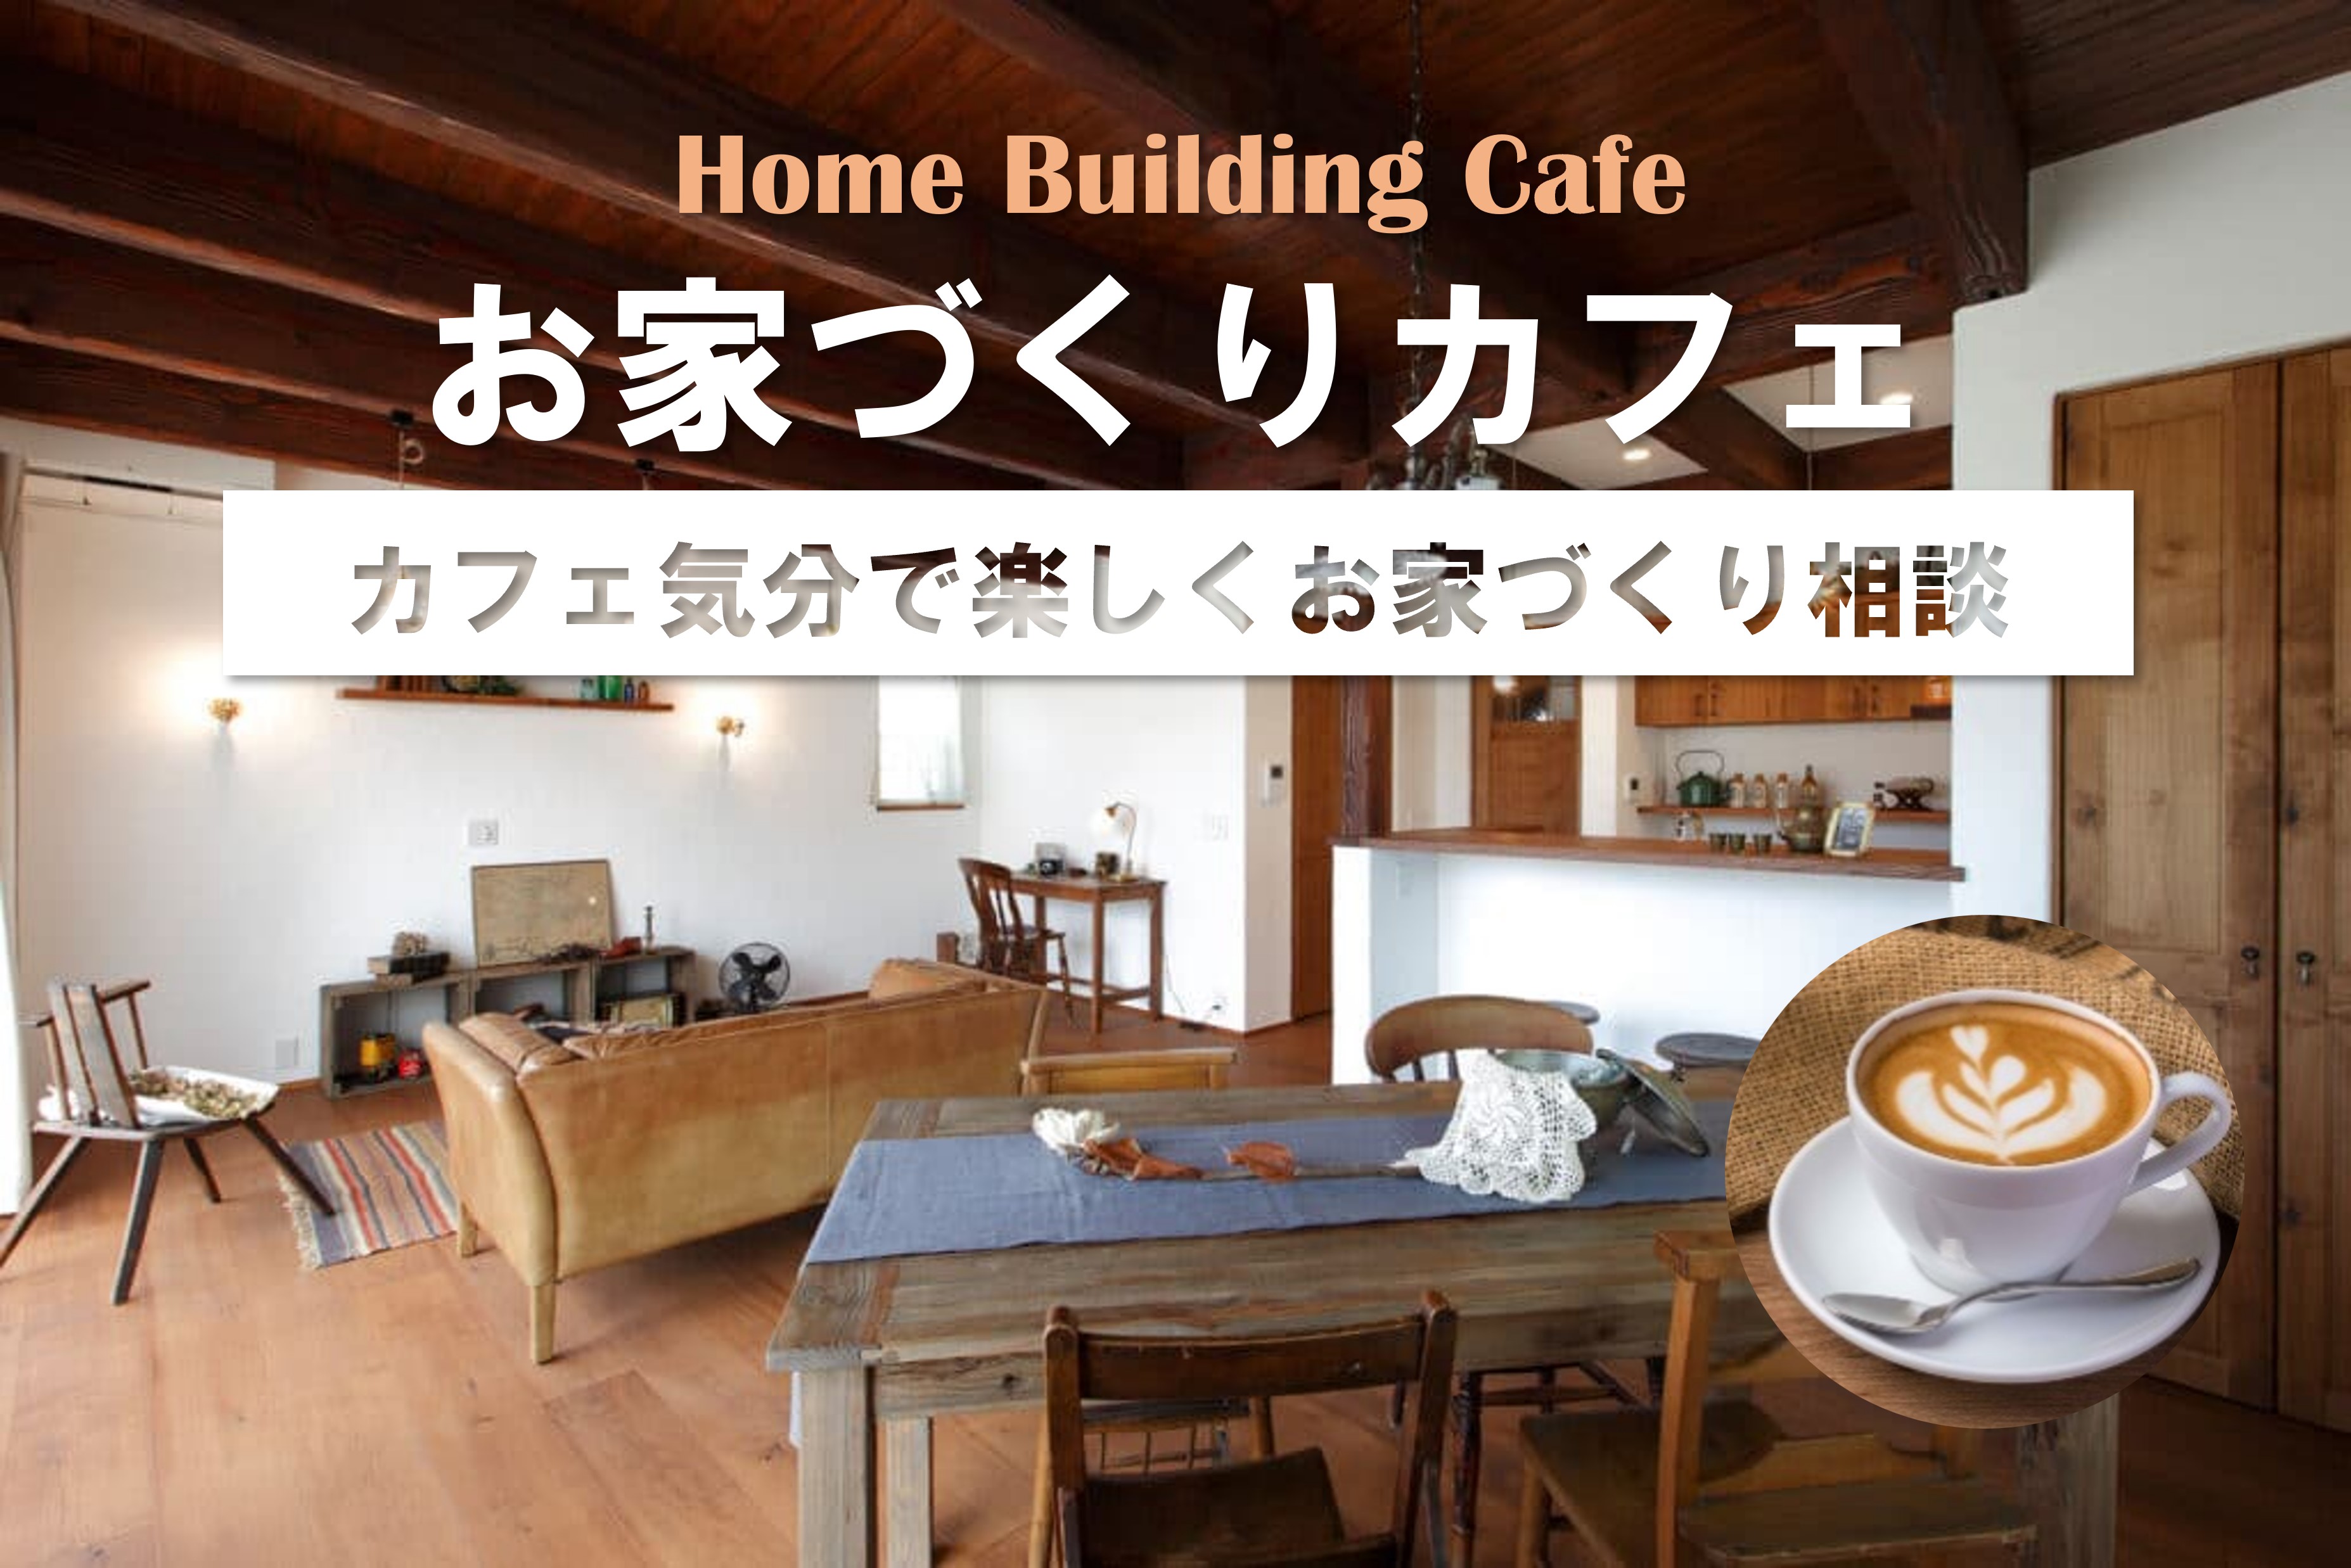 【お家づくりカフェ】スイーツ&コーヒーと一緒に「人気の施工事例」に触れる